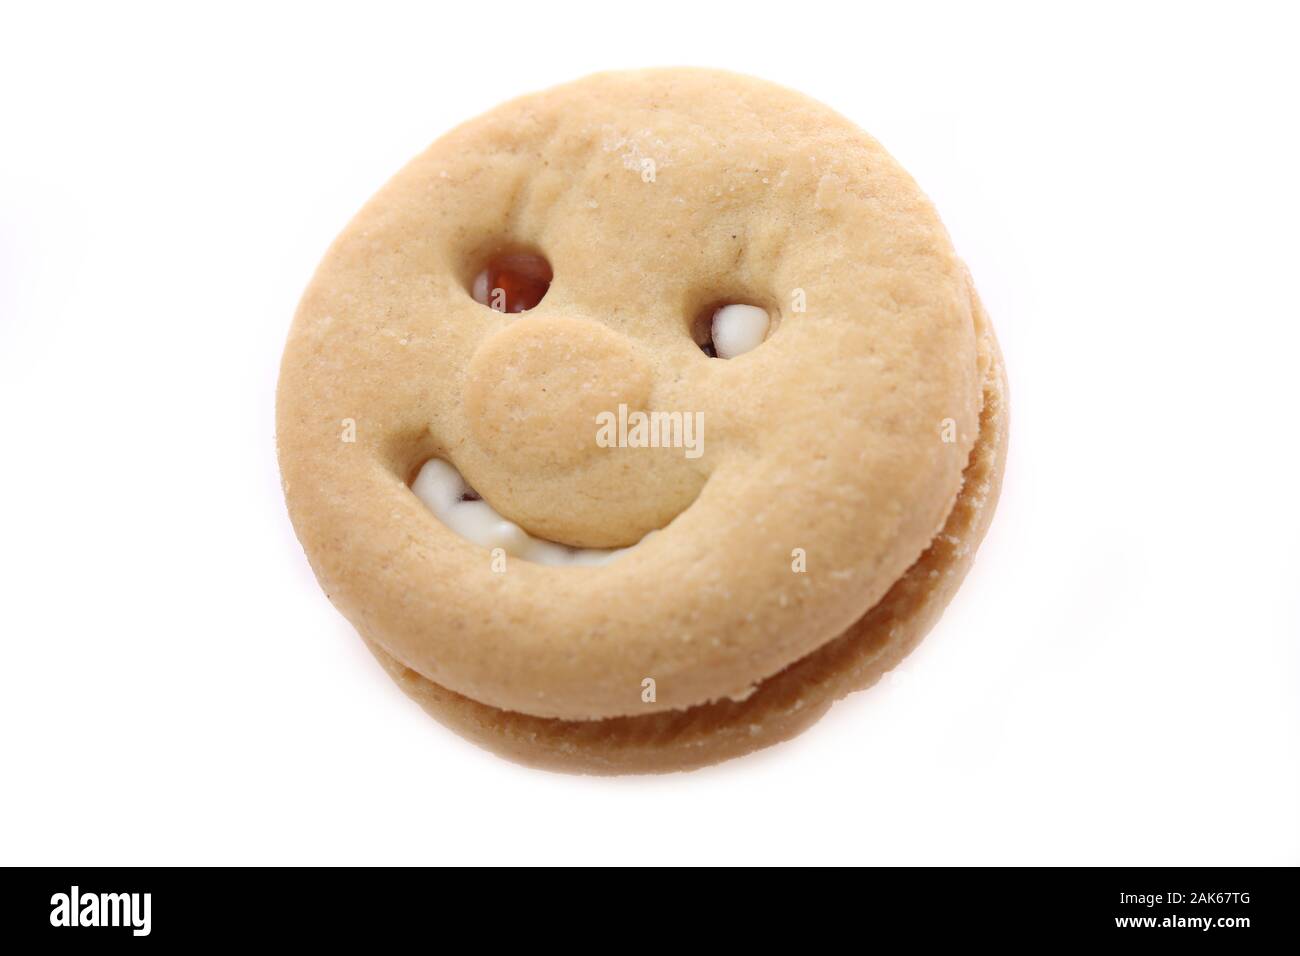 McVities visages heureux des biscuits sur un fond blanc Banque D'Images